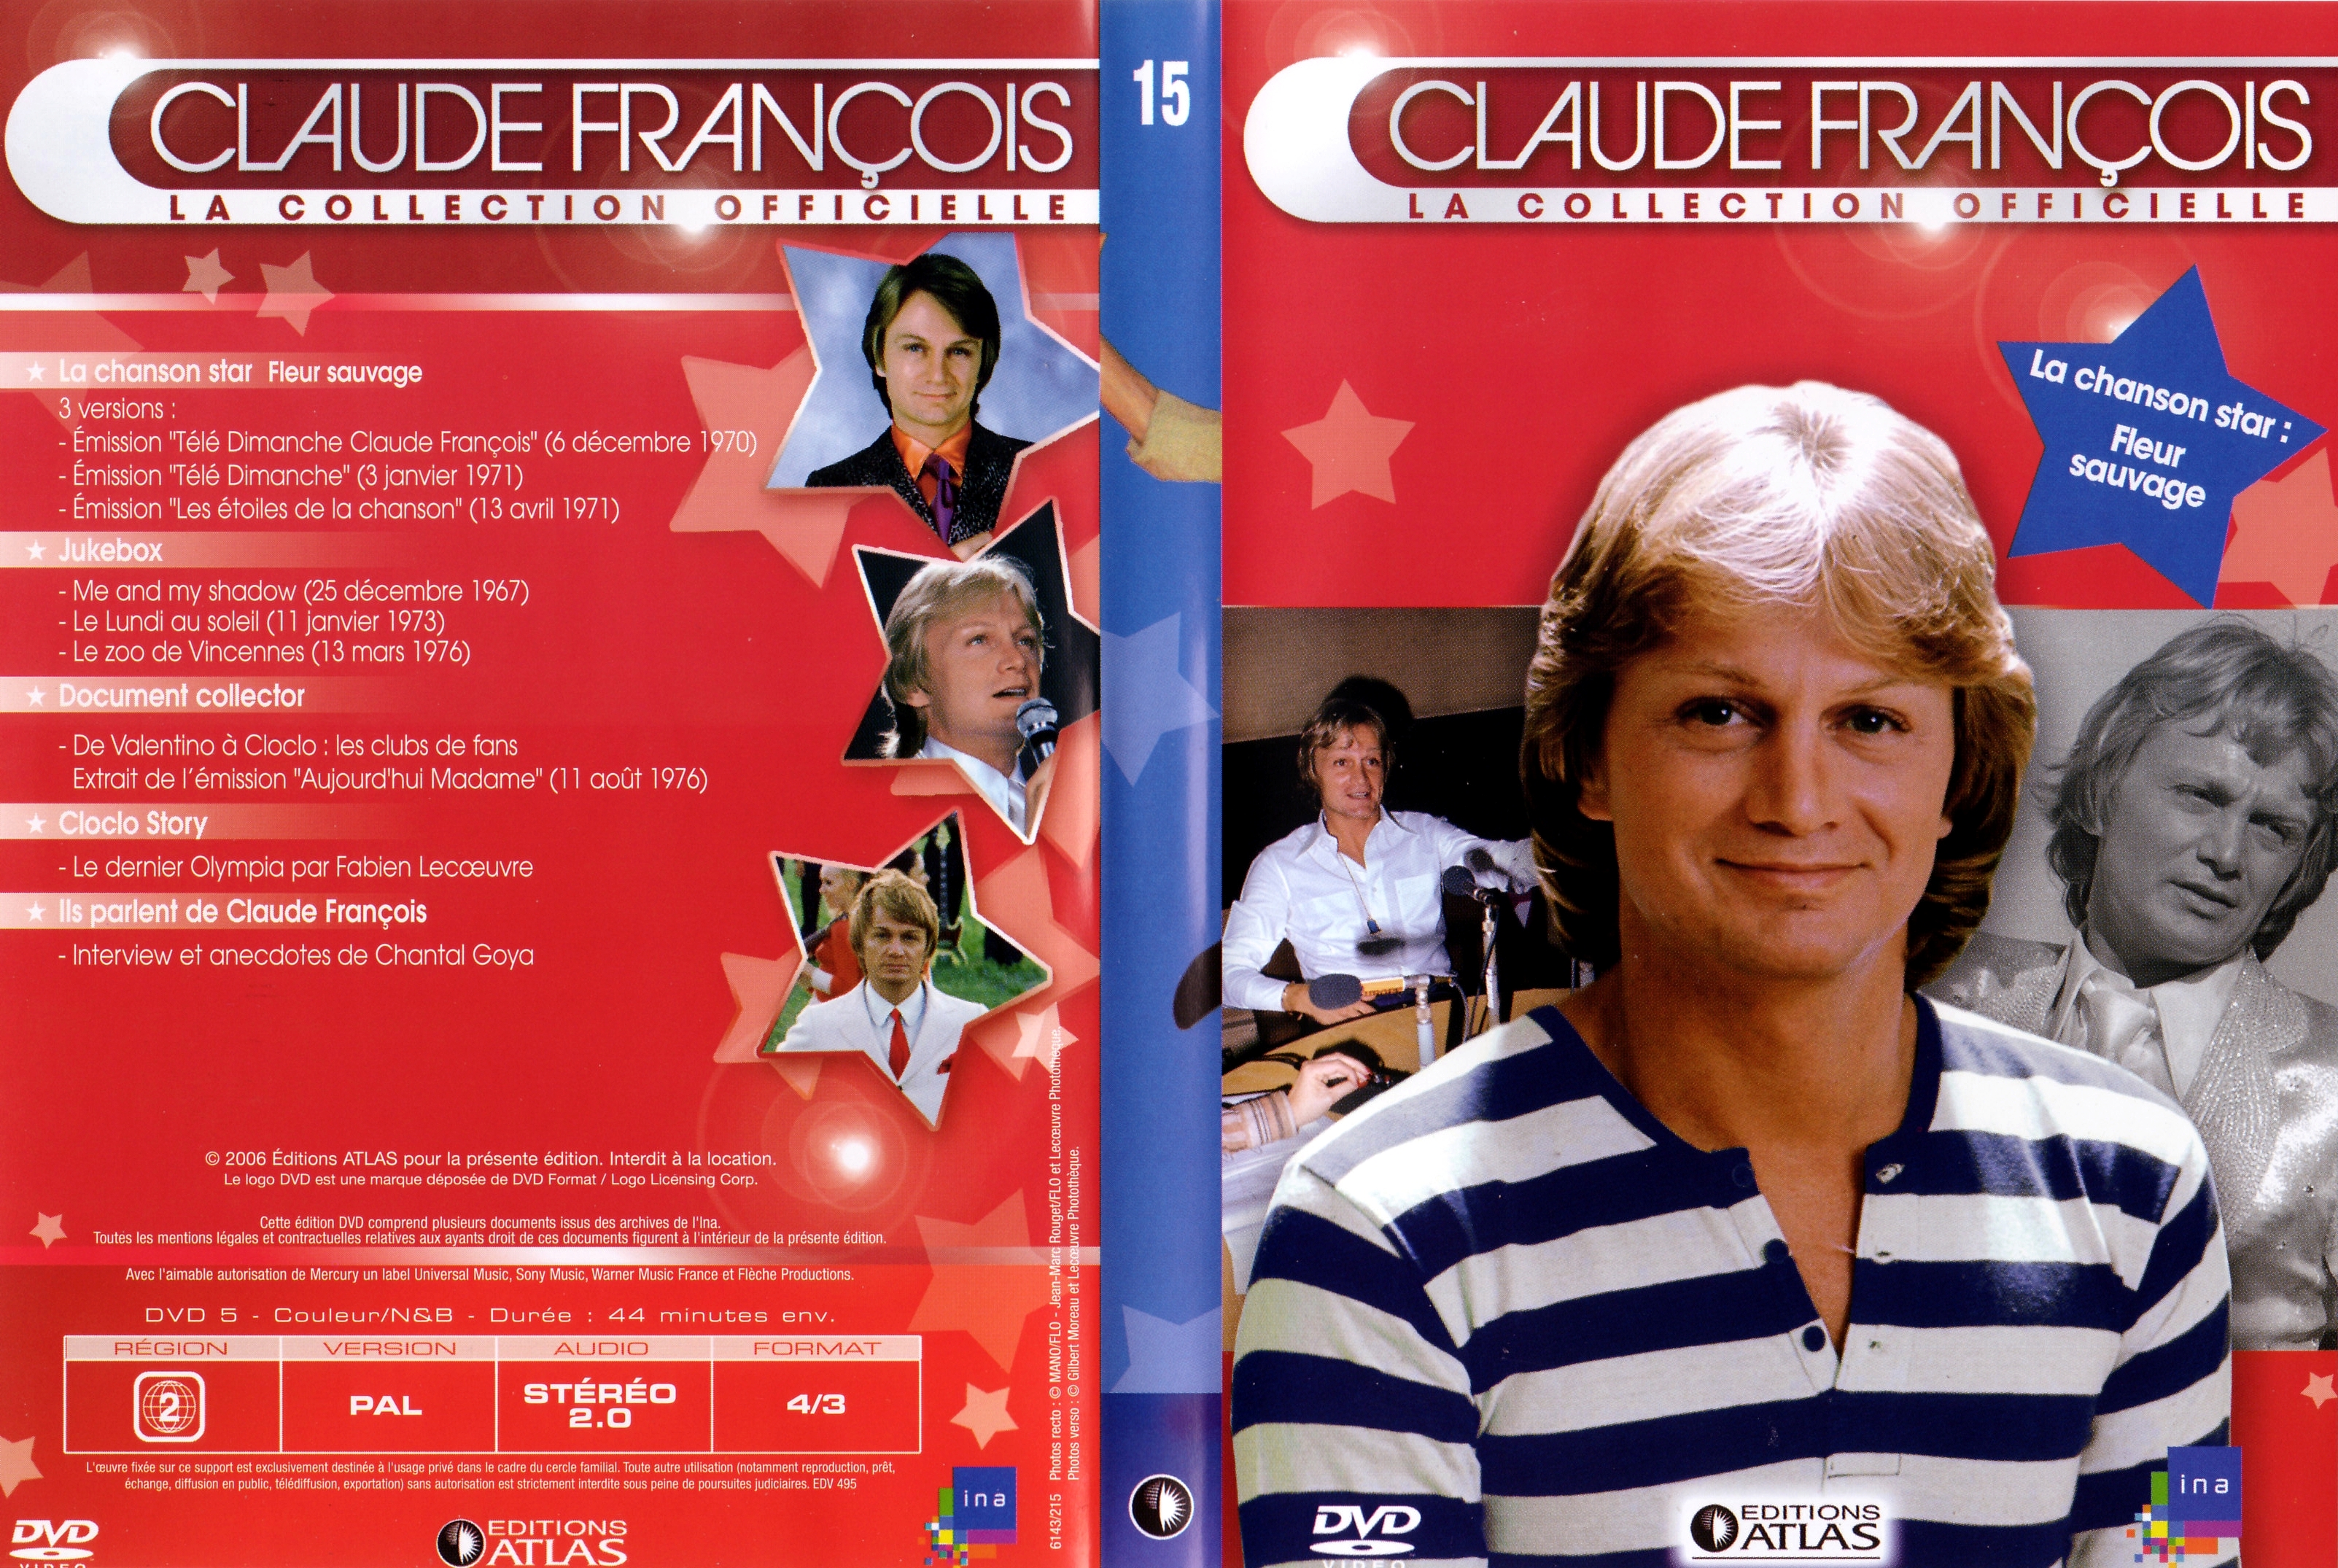 Jaquette DVD Claude Francois la collection officielle vol 15